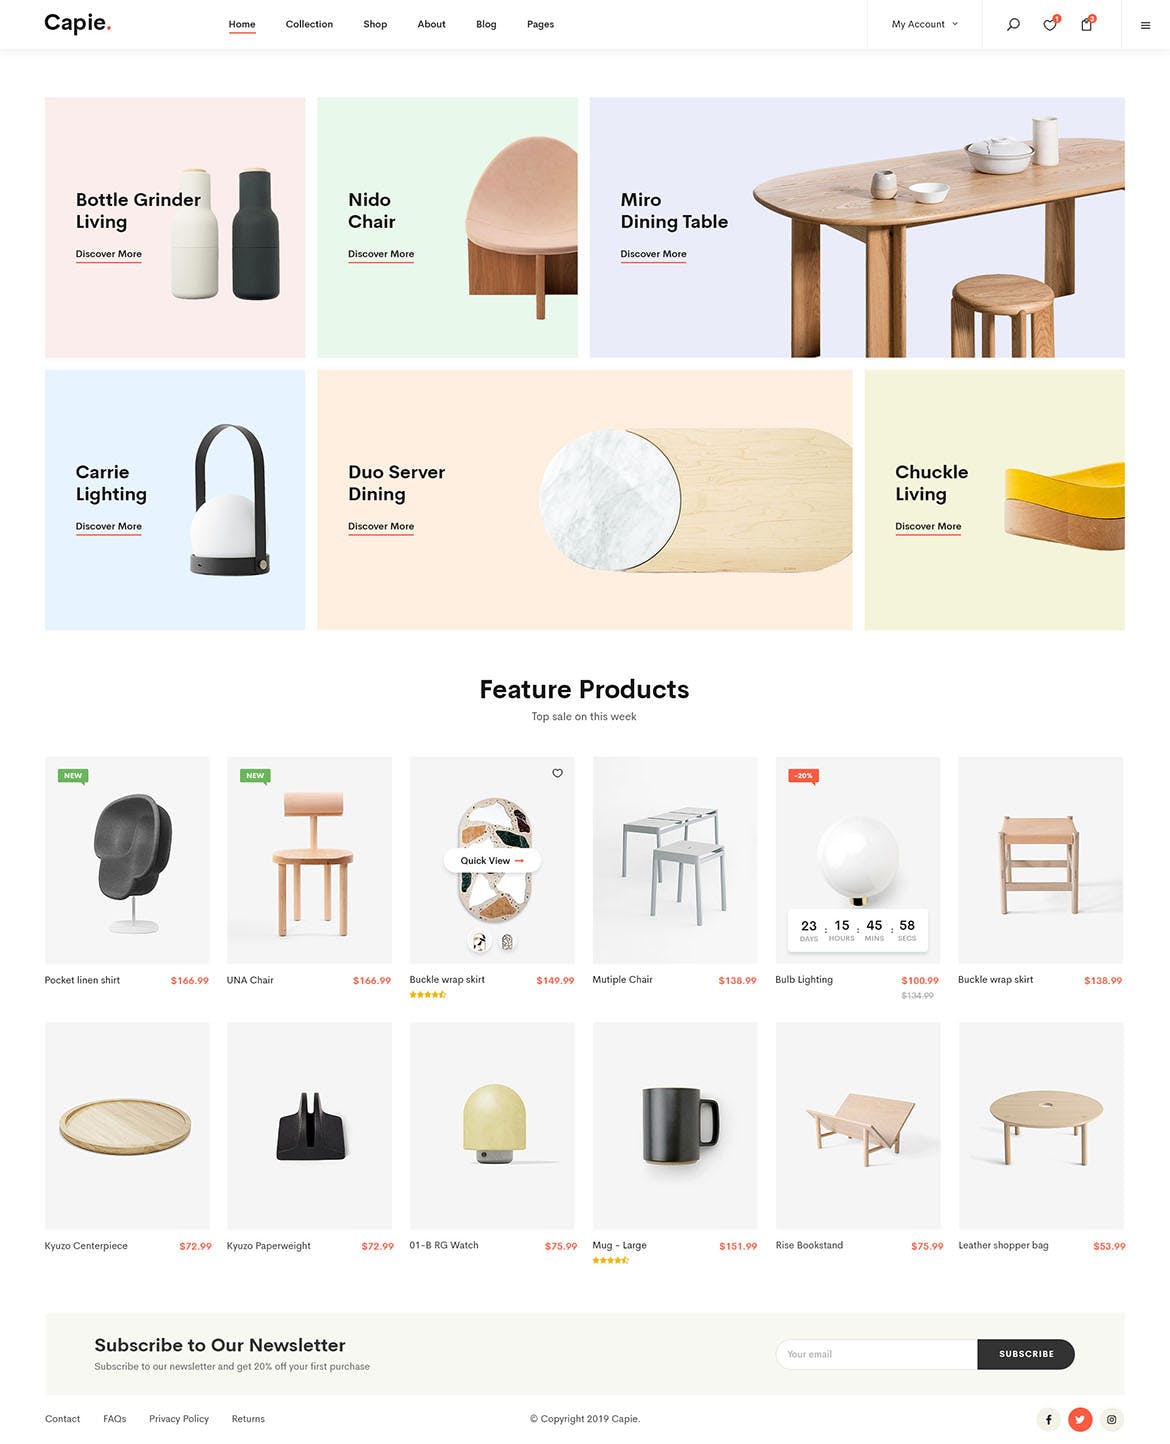 简约时尚设计风格电商网站设计PSD模板 Capie | Minimalist eCommerce PSD Template插图(15)